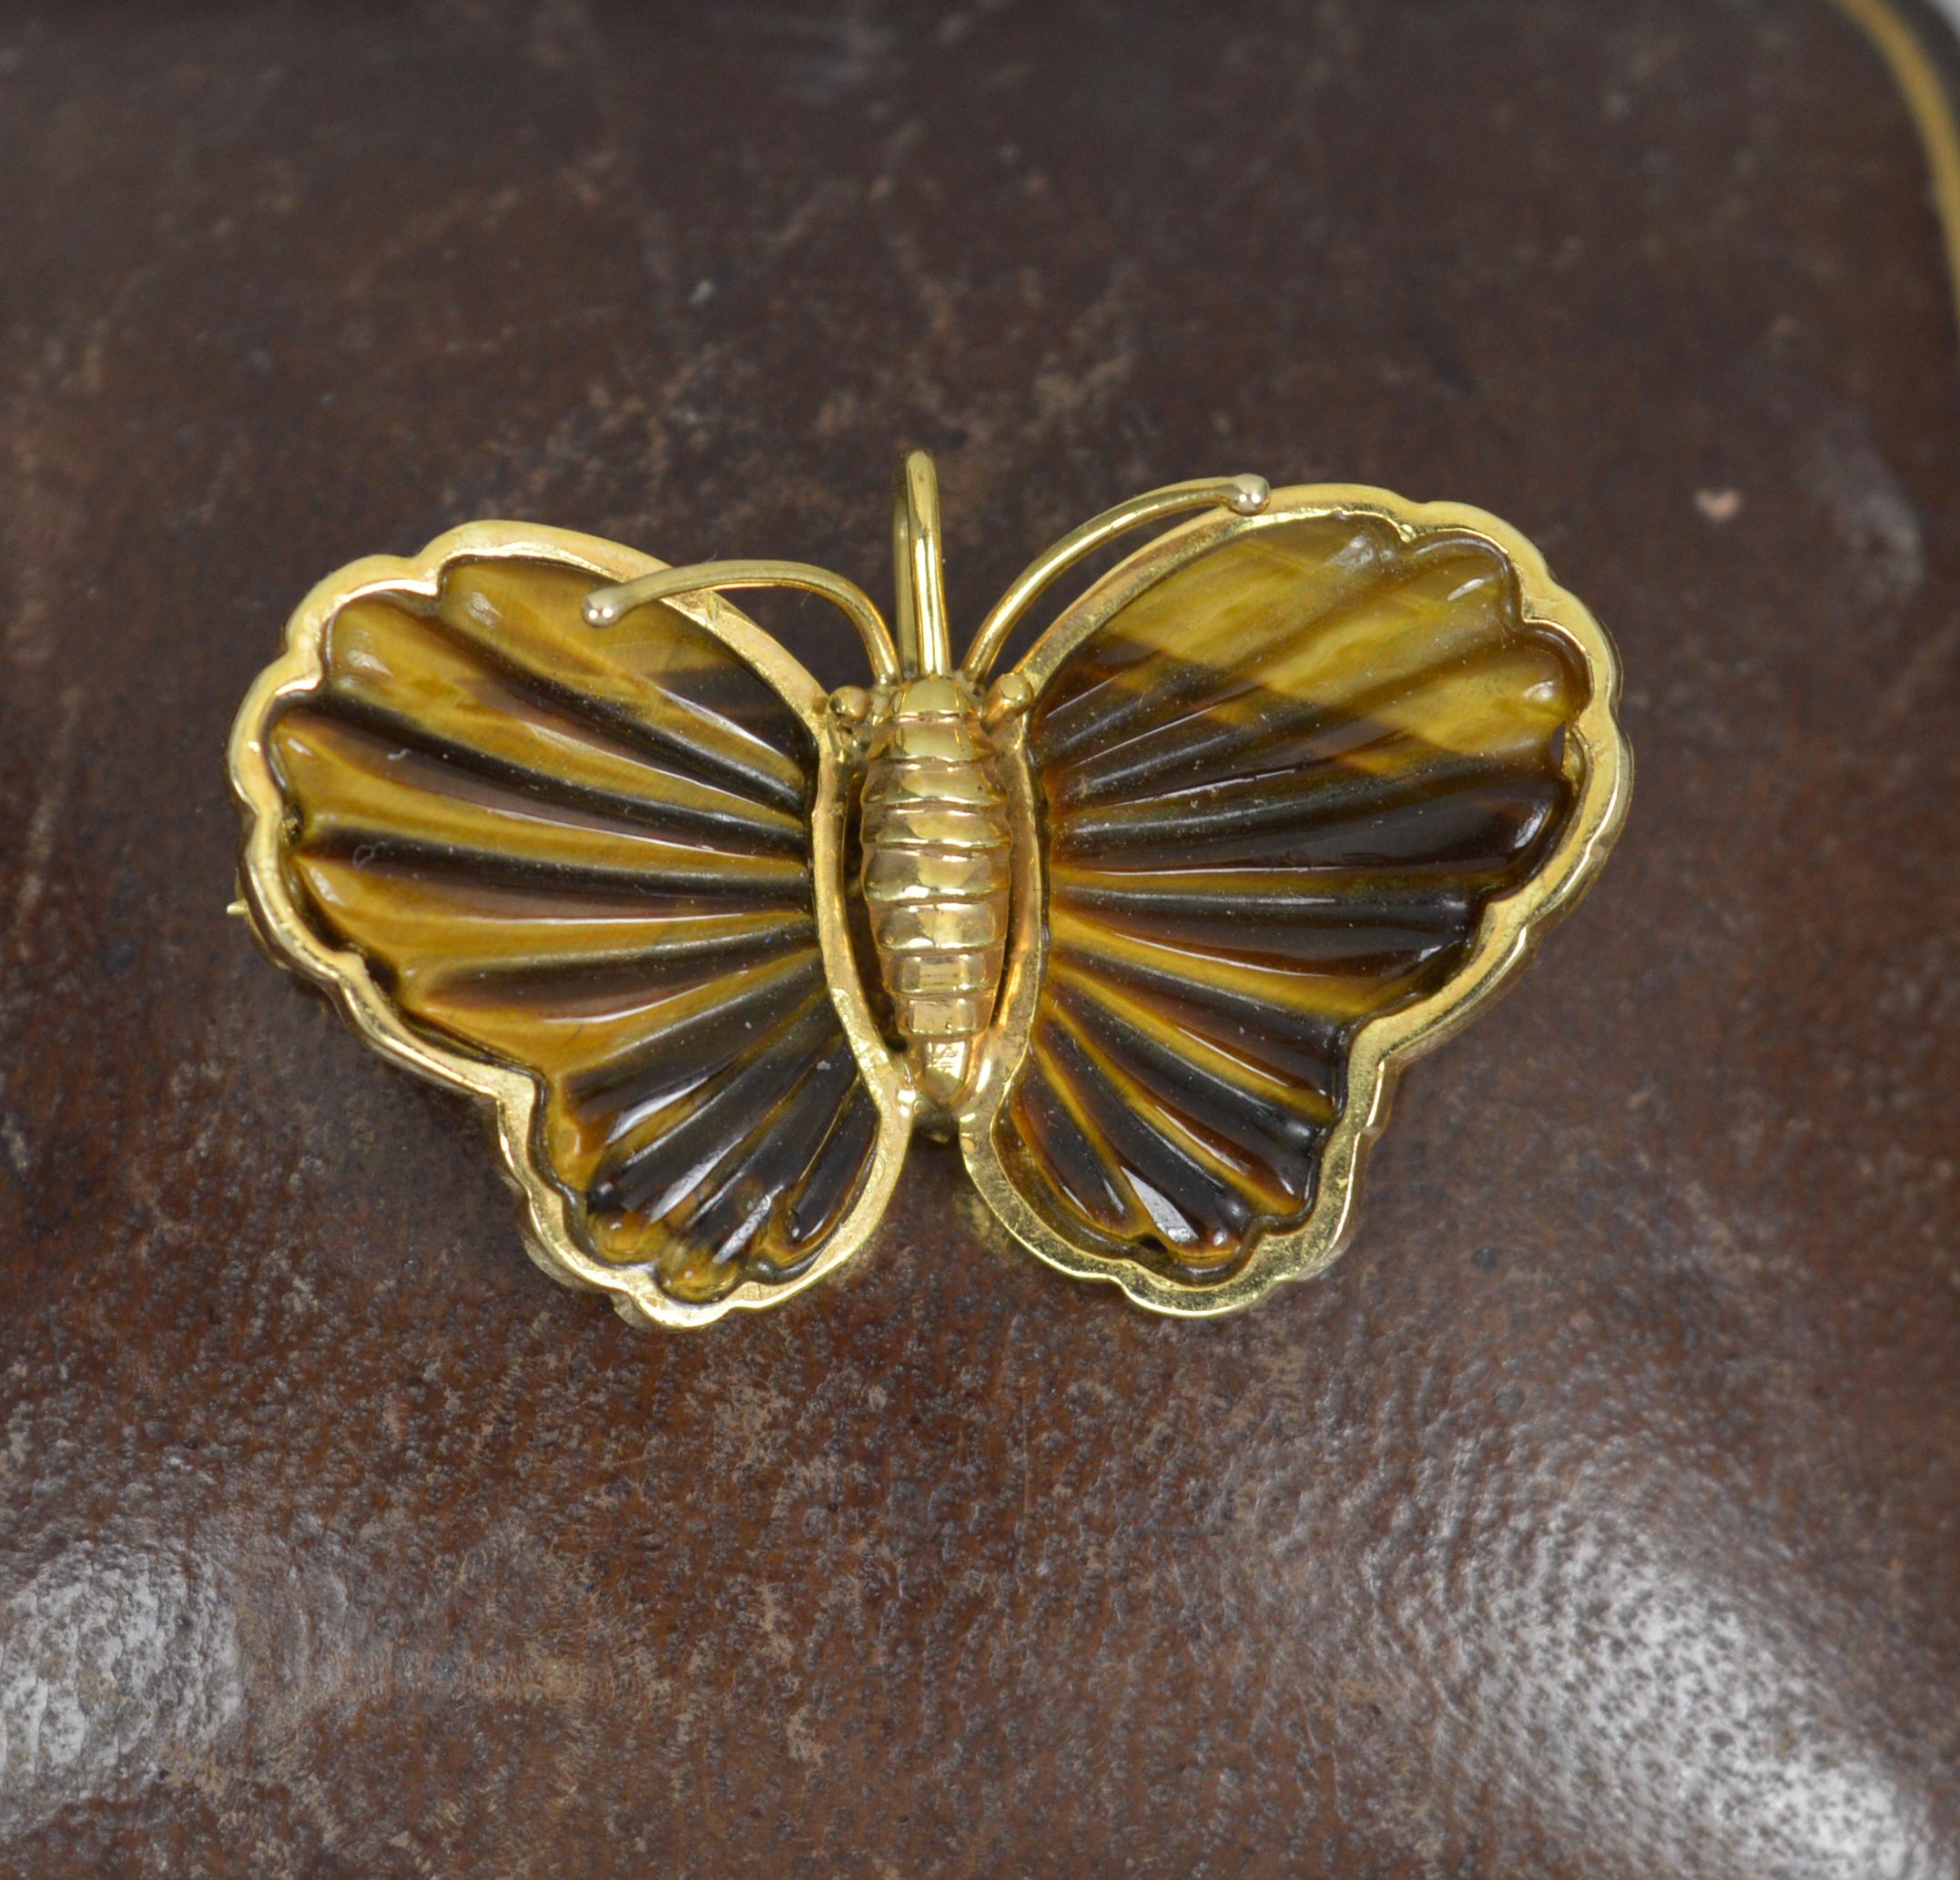 Un pendentif ou une broche de très bonne facture en forme de papillon.
Exemple d'or jaune massif de 14 carats.
Chaque aile est ornée d'un œil de tigre, finement sculpté.
Broche à l'envers et balle au centre.
CONDITION ; Excellent. Un design très